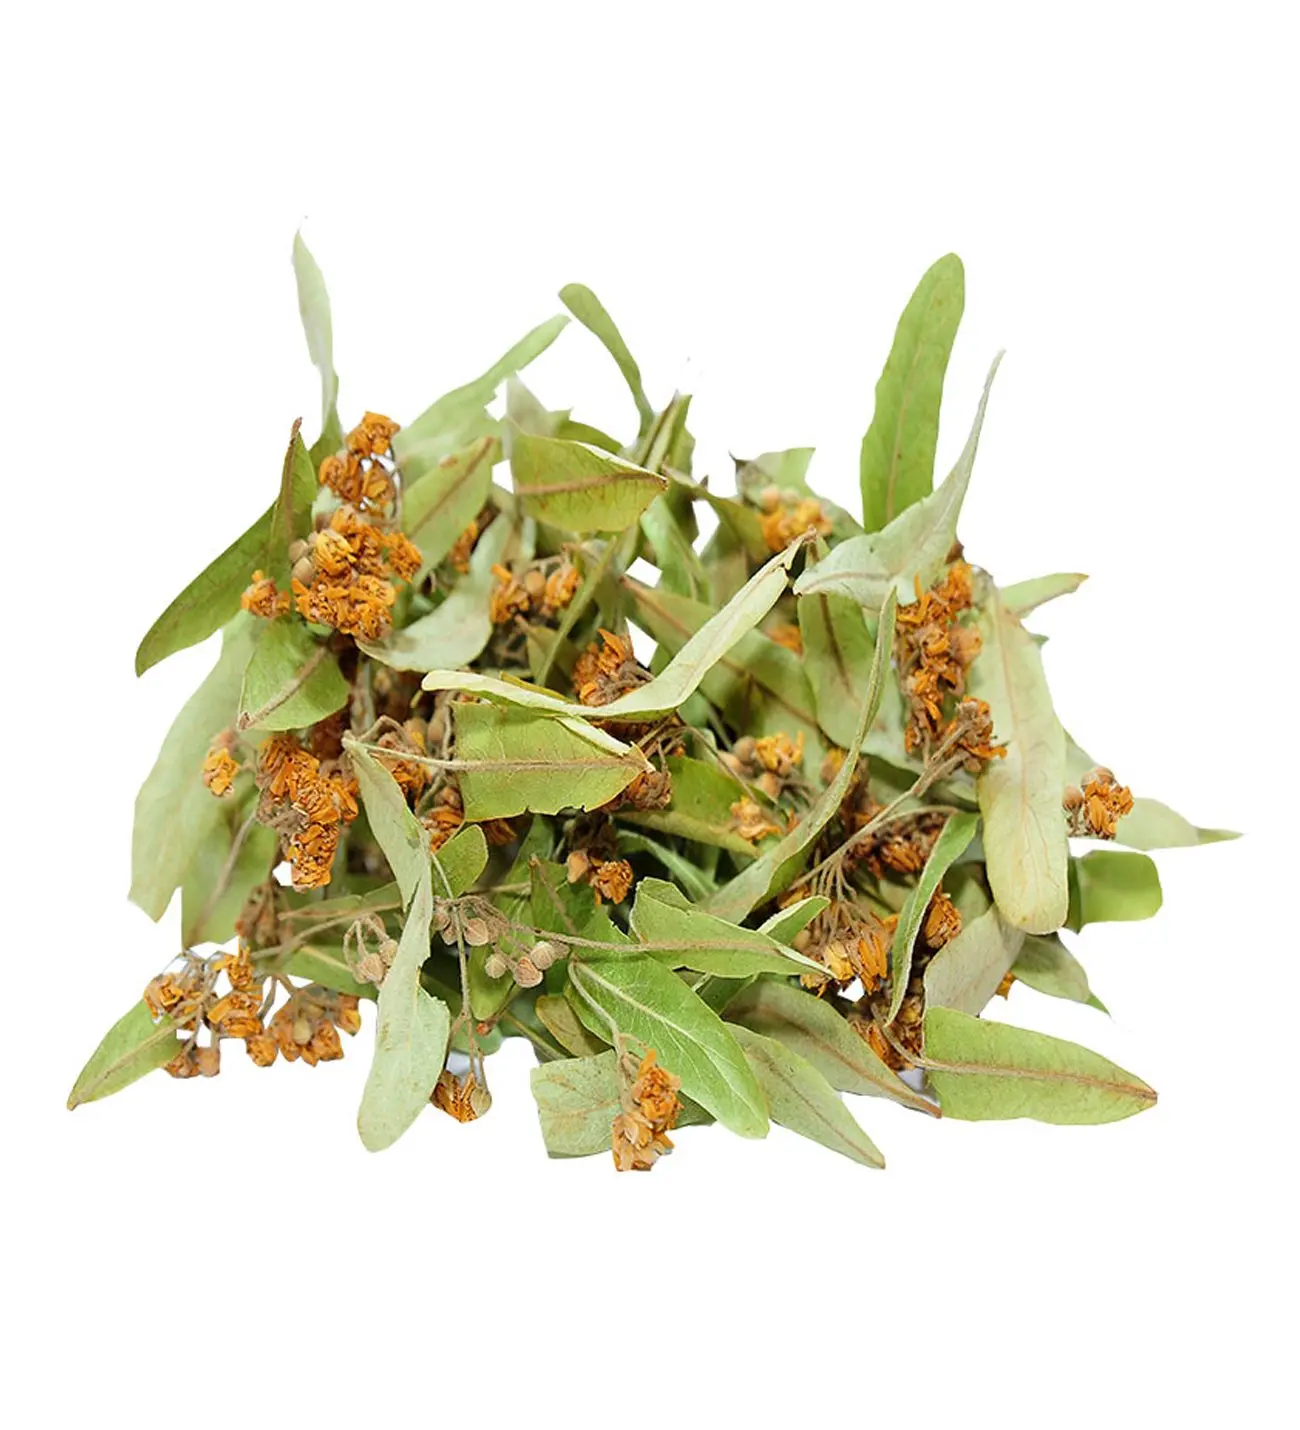 

Травяной чай с высушенными листьями липы, 100 г-400 г, бесплатная доставка